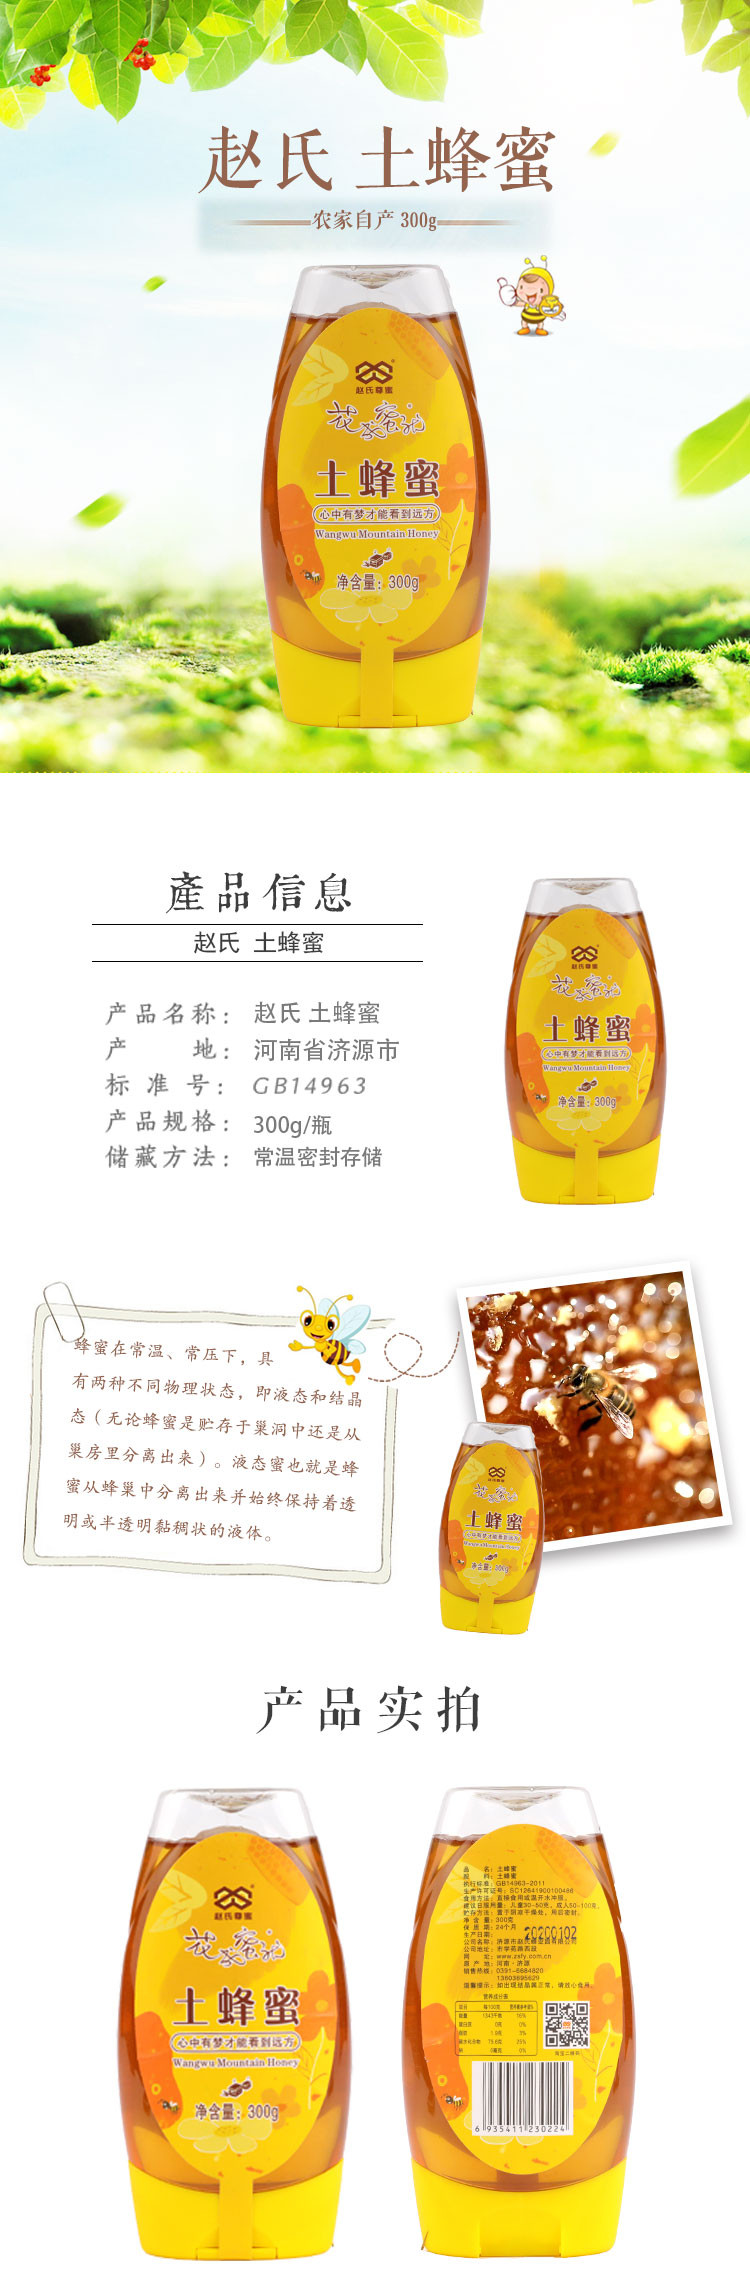 赵氏 土蜂蜜300g 农家自产小包装蜂蜜